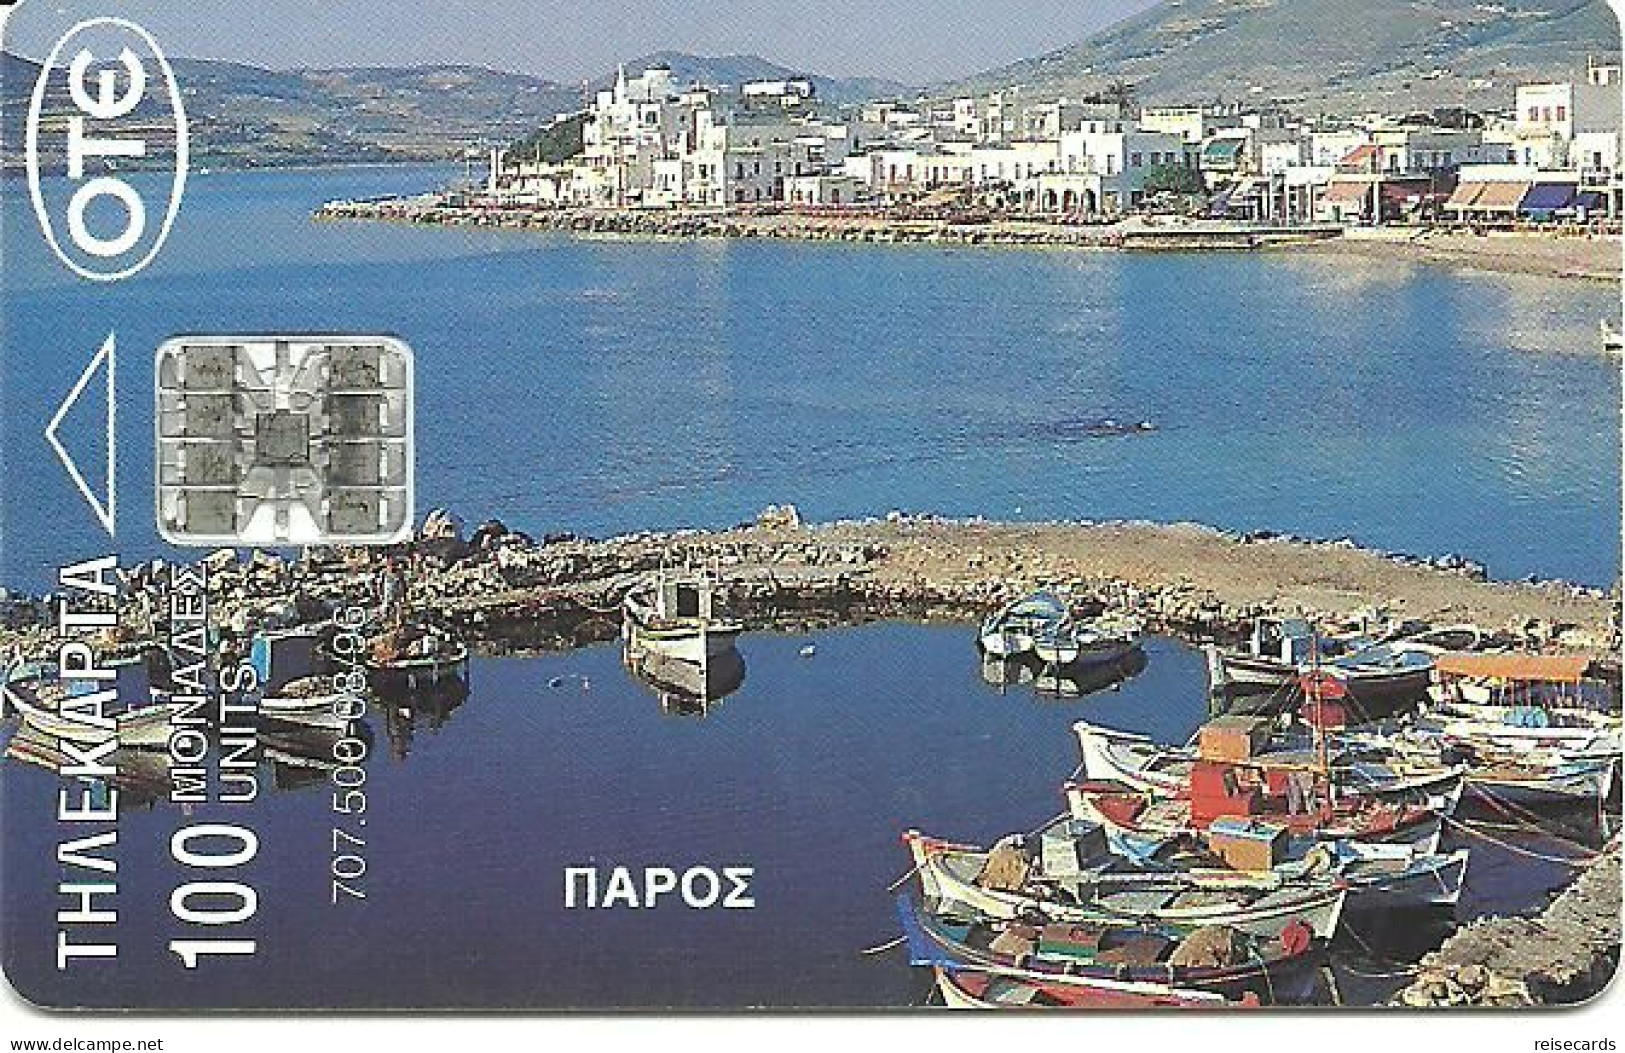 Greece: OTE 08/96 Island Paros - Griechenland